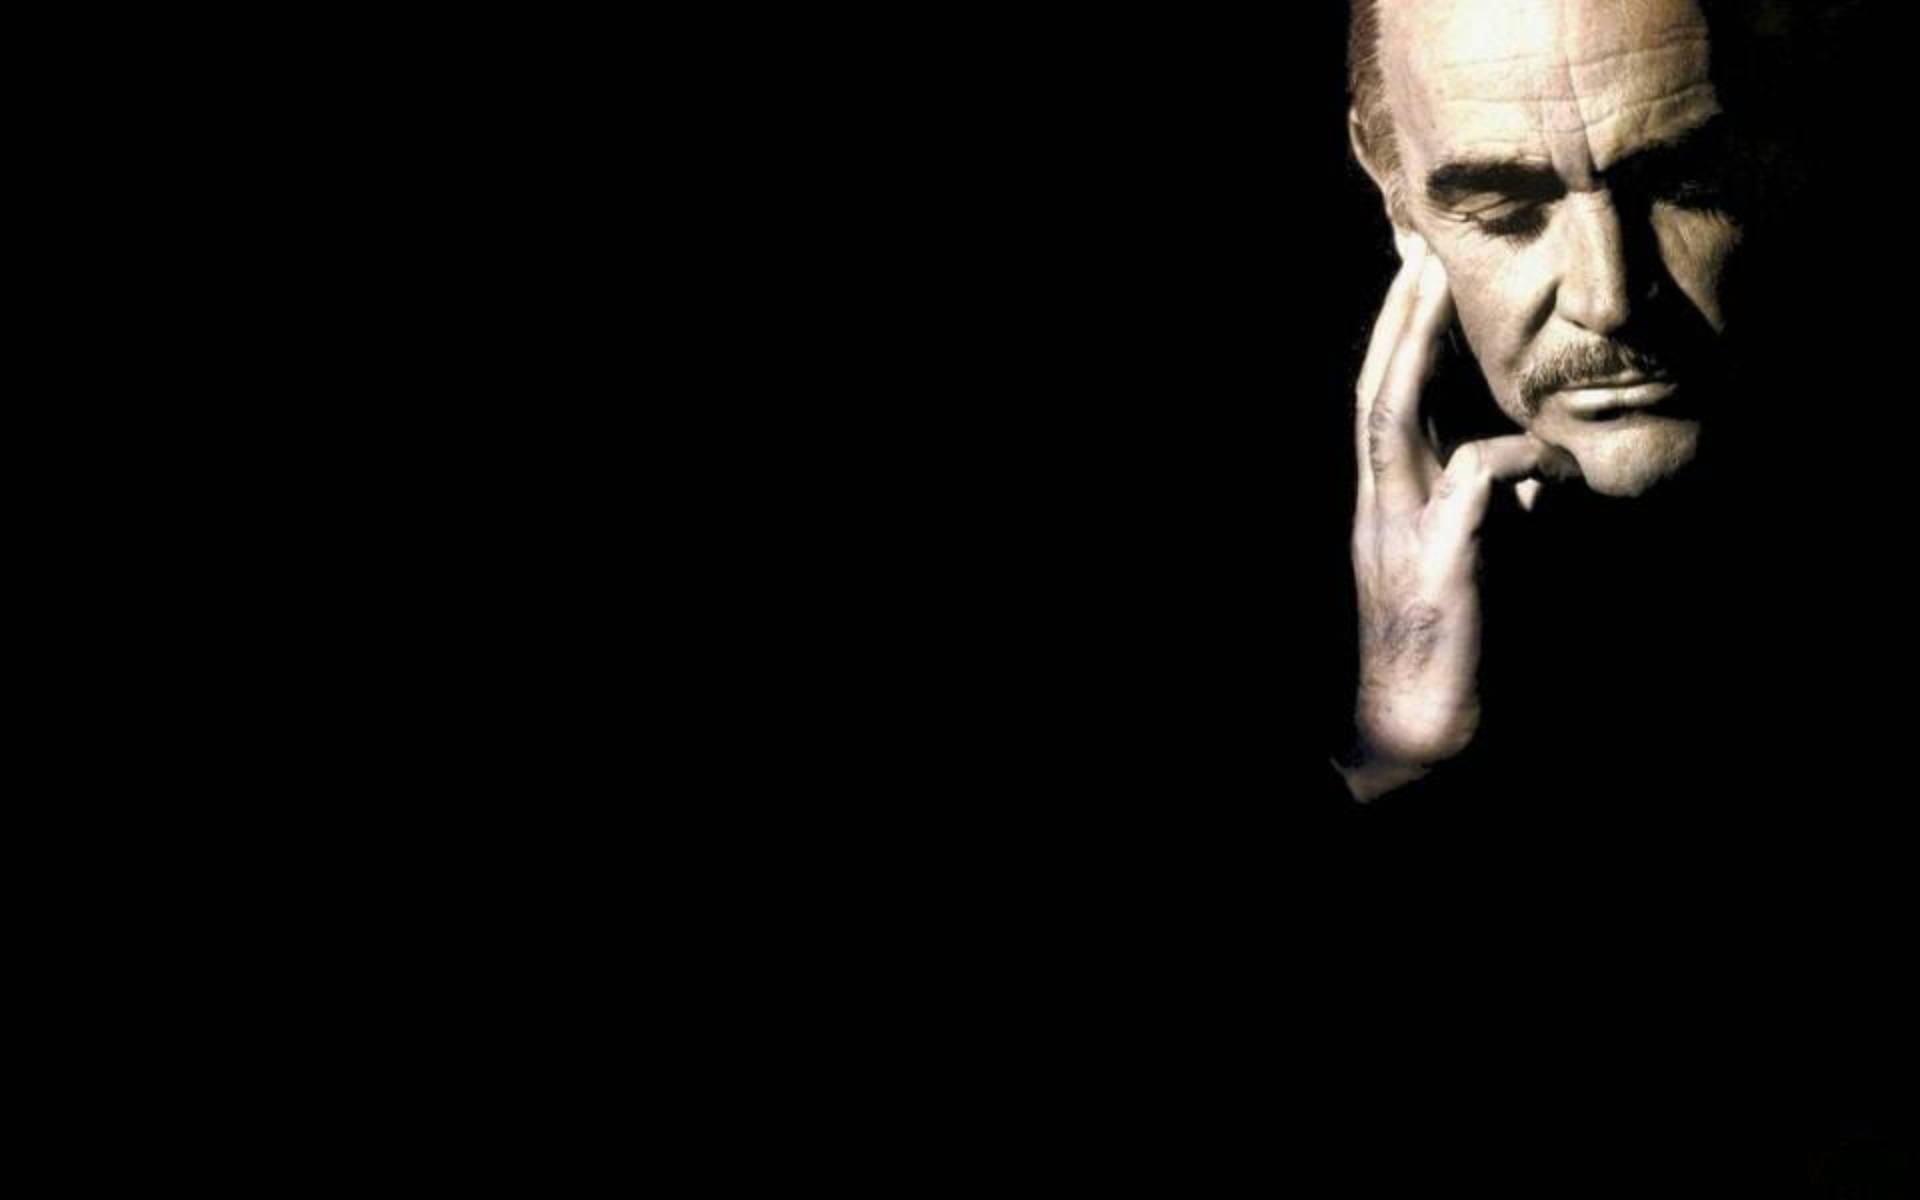 Contemplative Actor Sean Connery